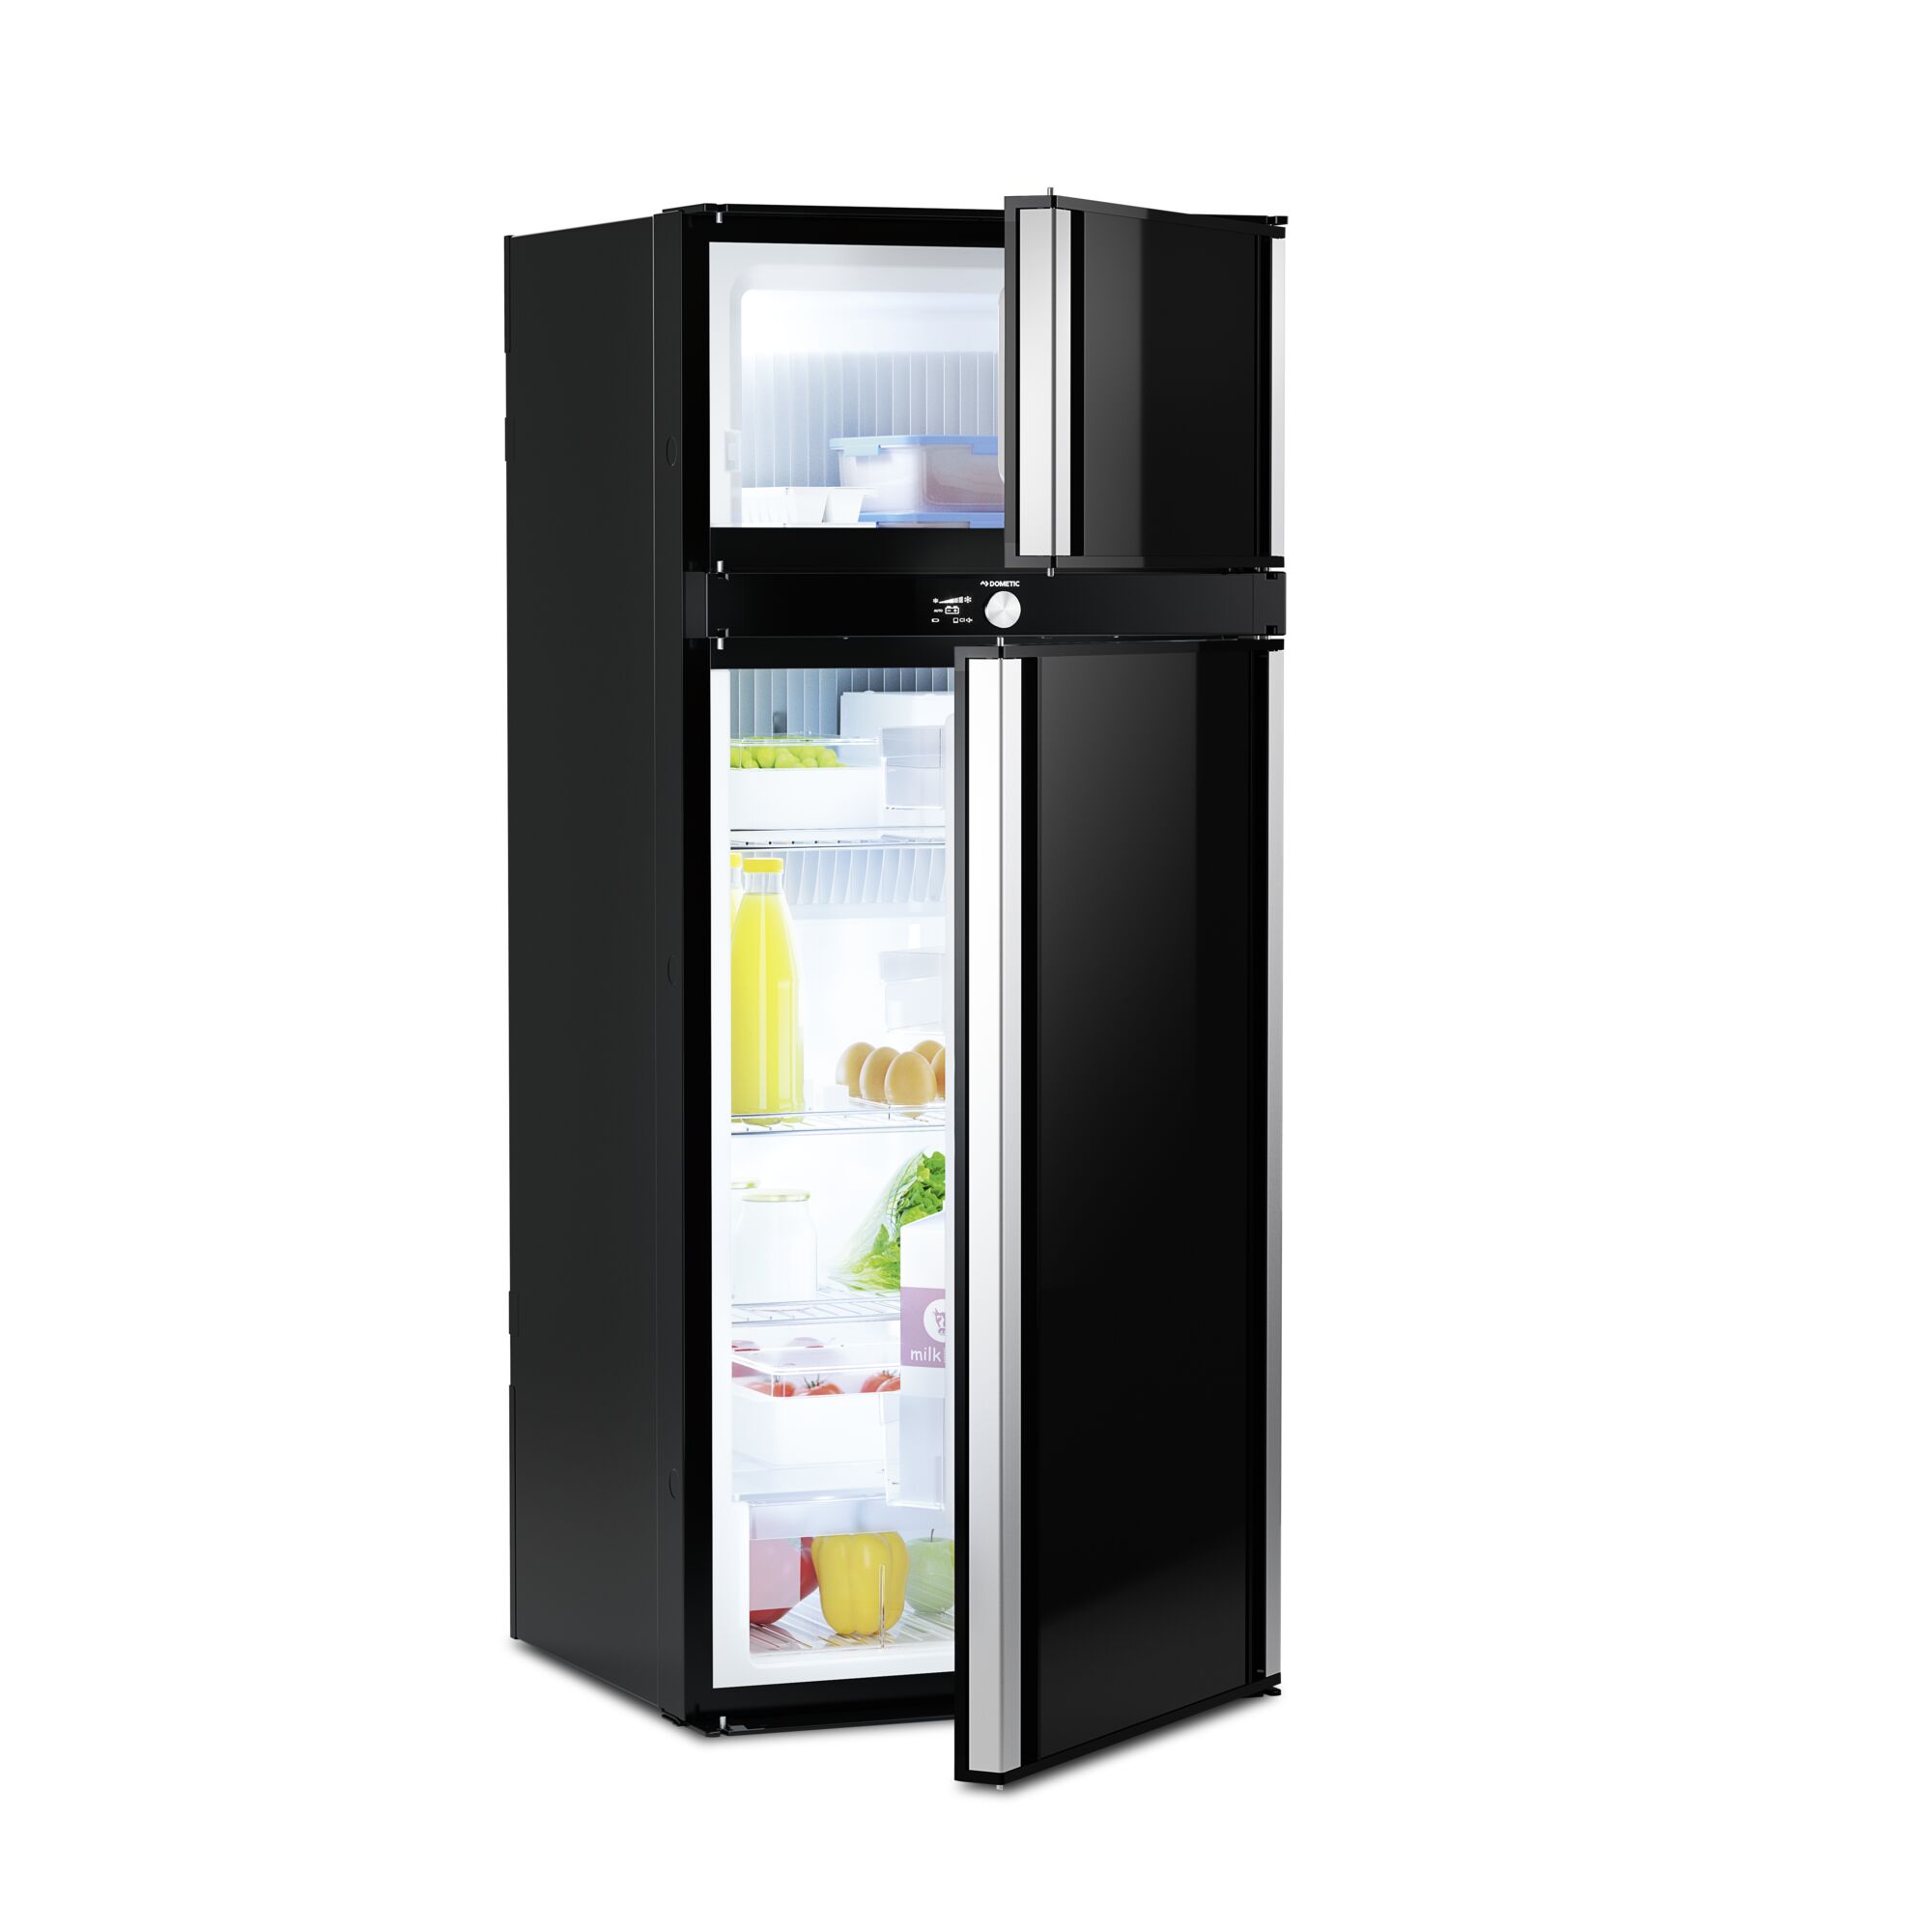 Dometic RMD 10.5T - Absorption refrigerator, 153 l, TFT display